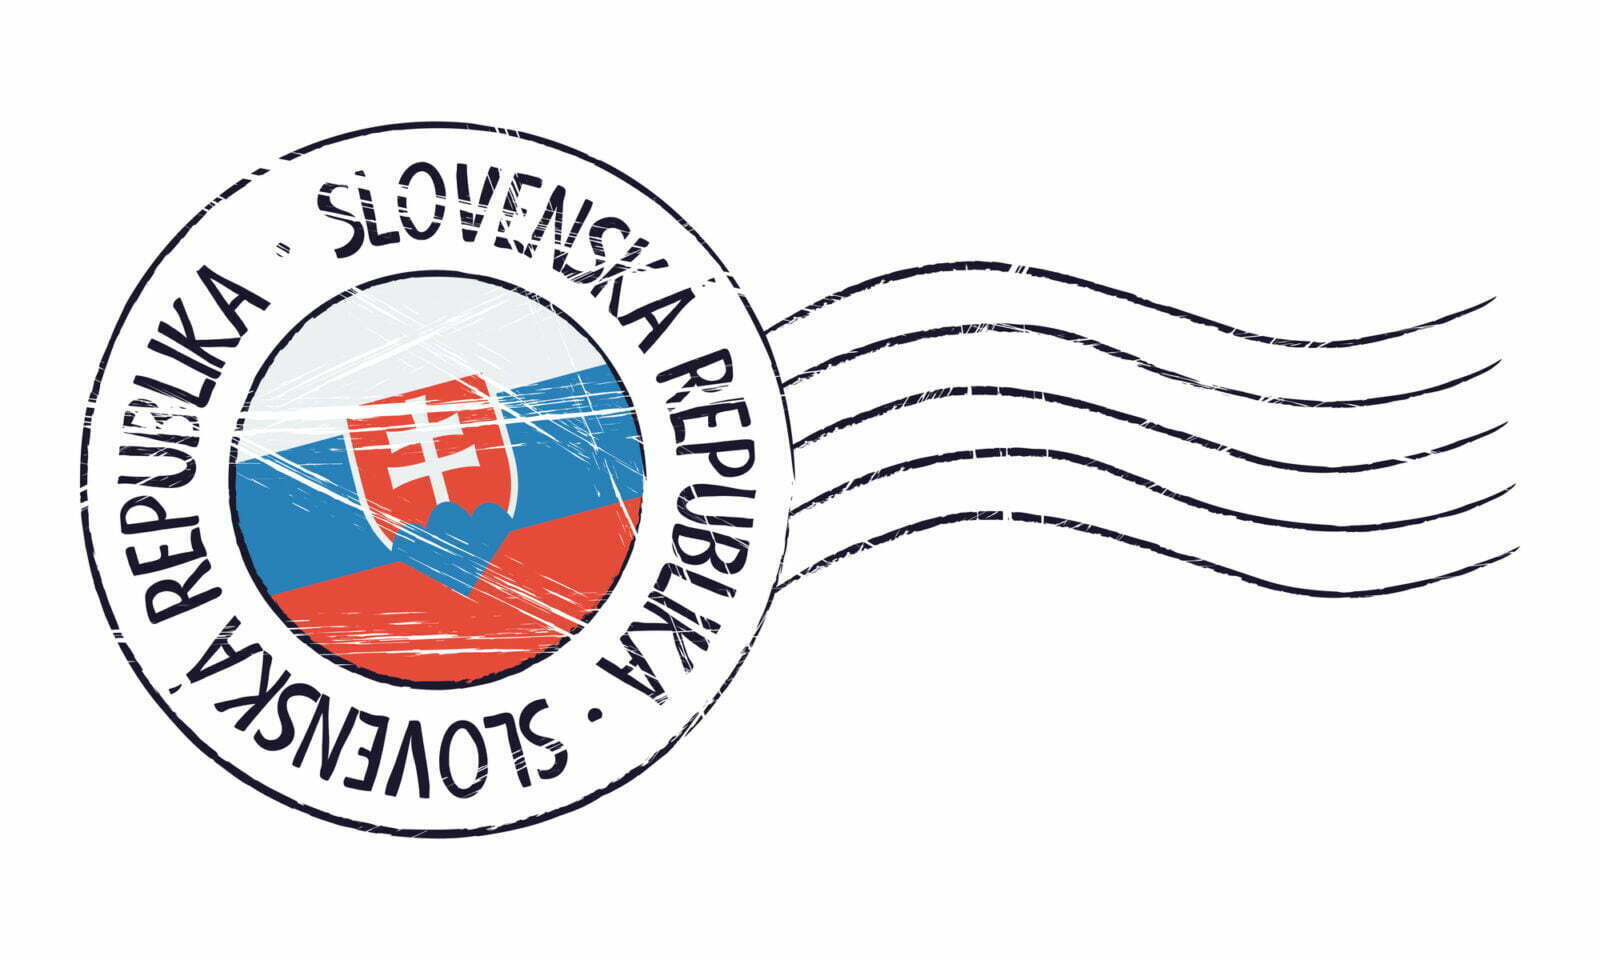 postovni znamka slovensko